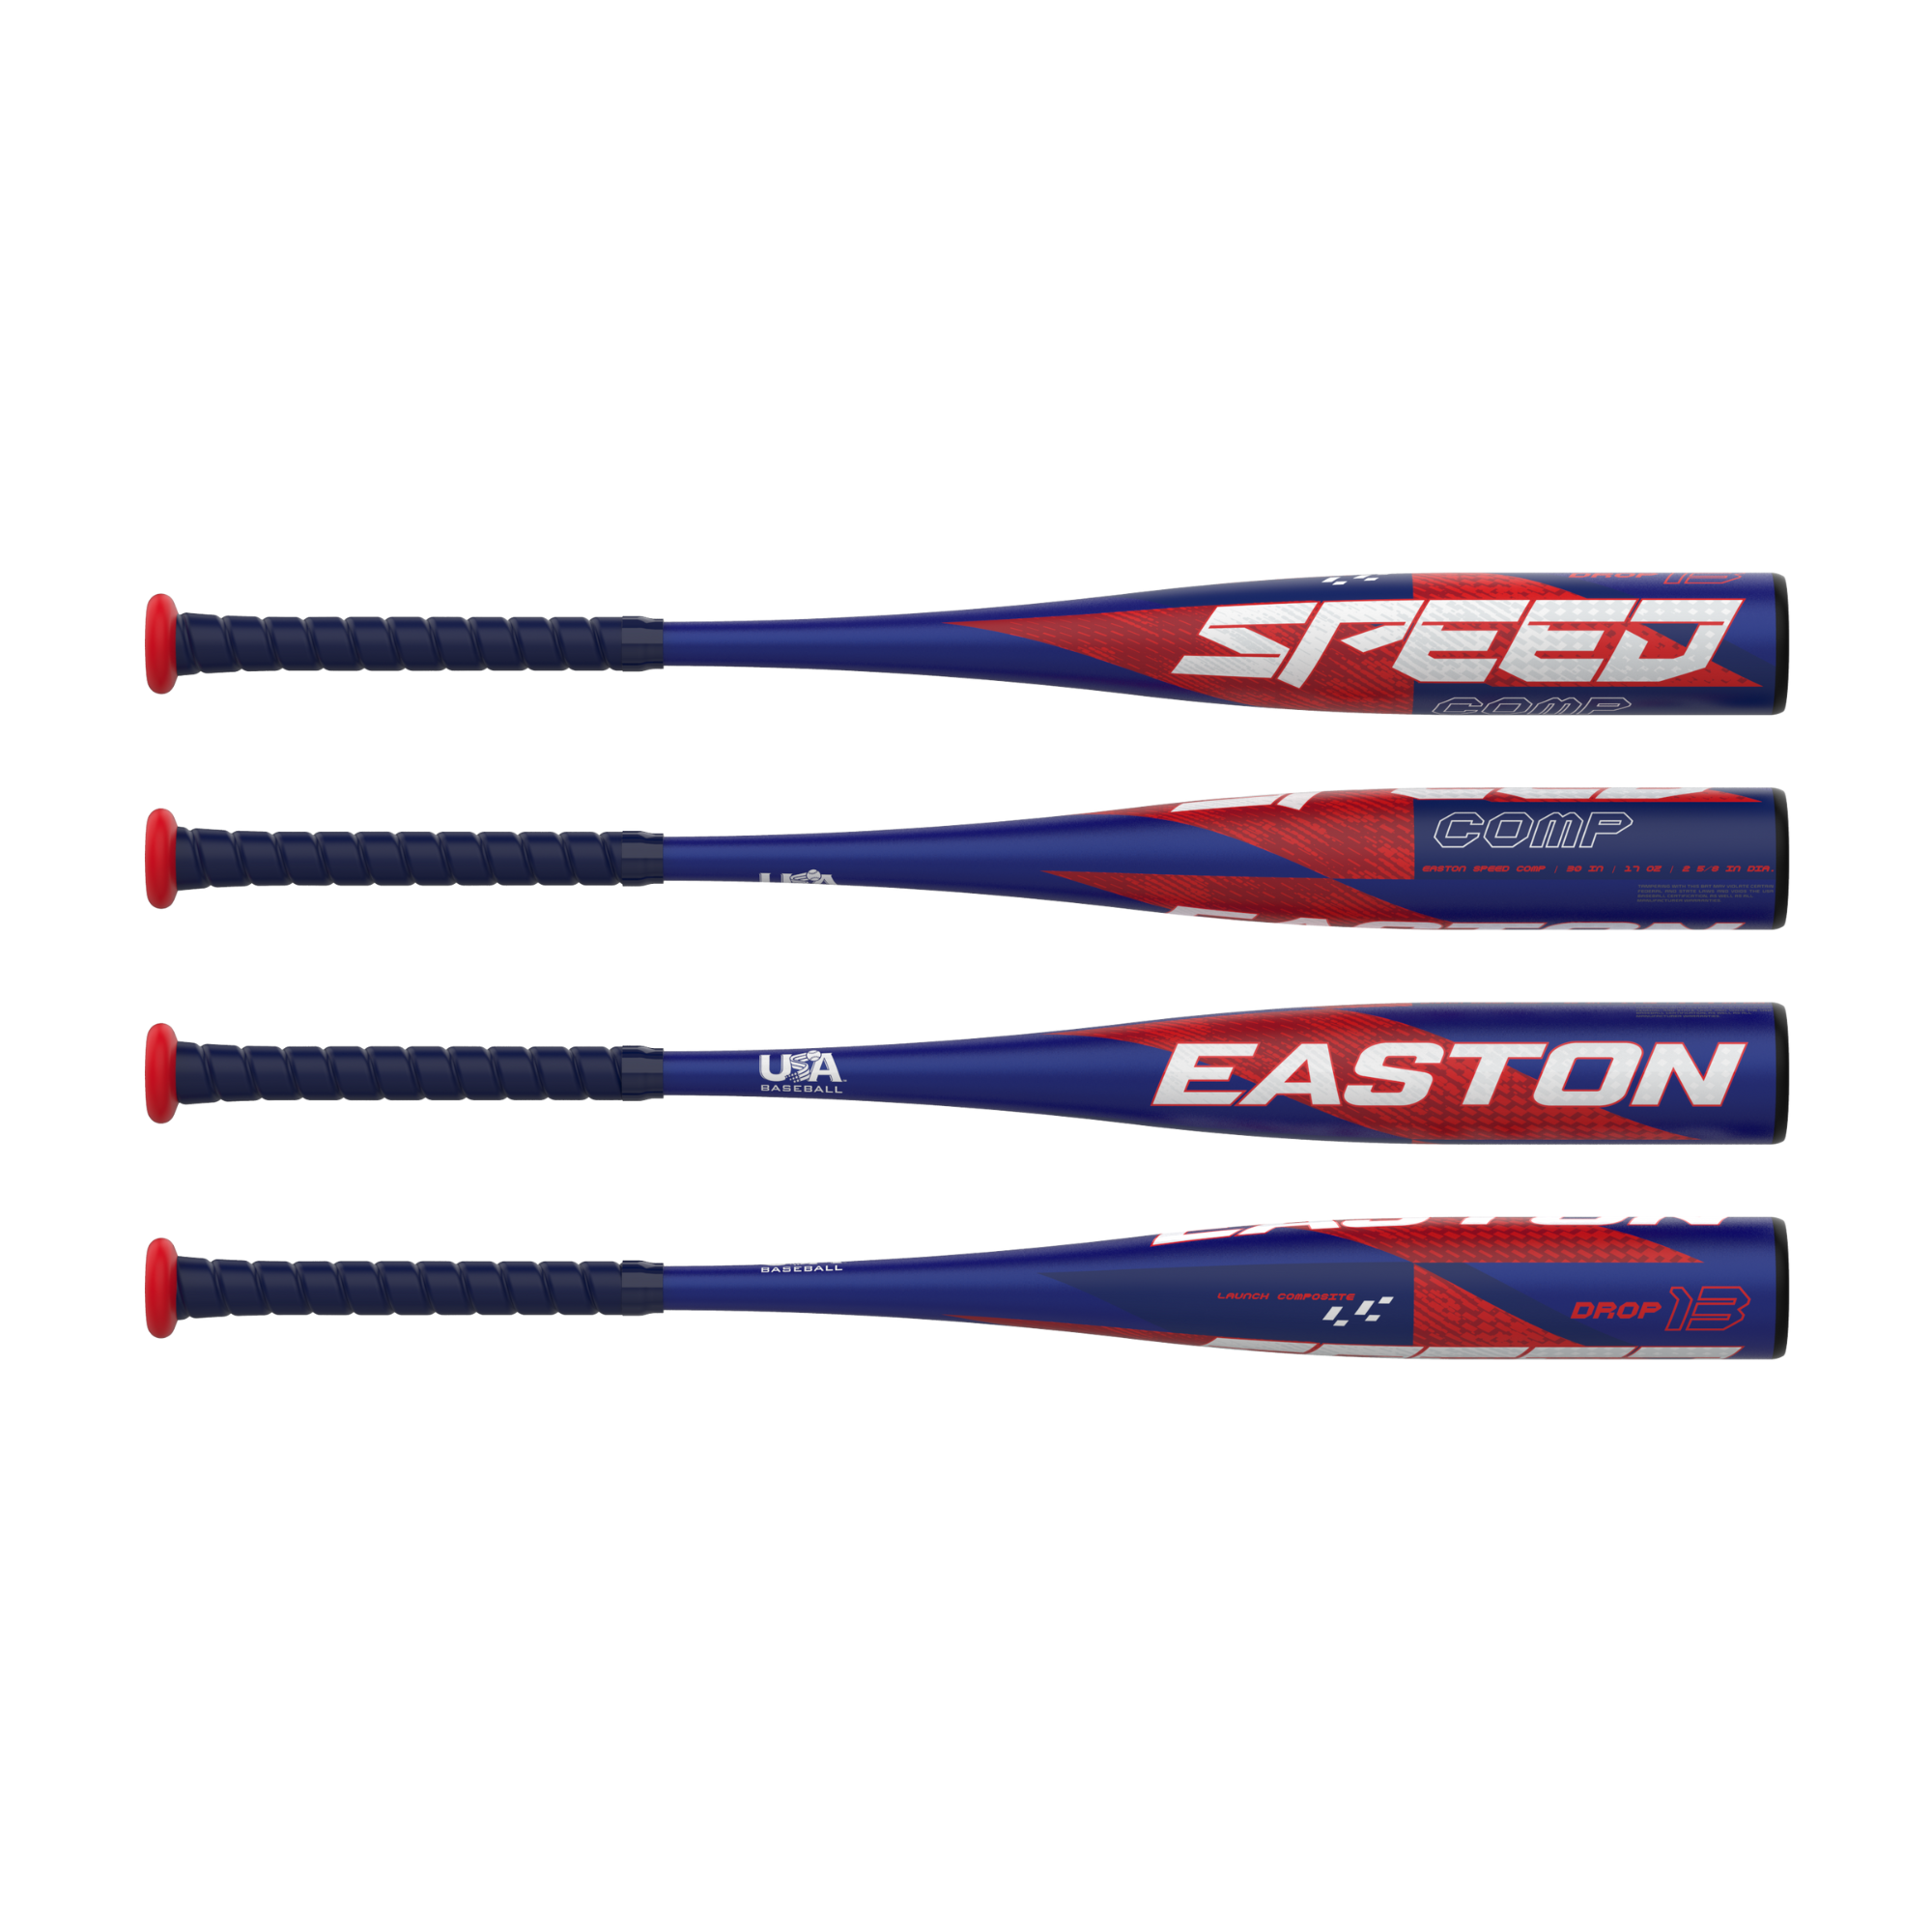 Easton Speed Comp -13 (2  5/8